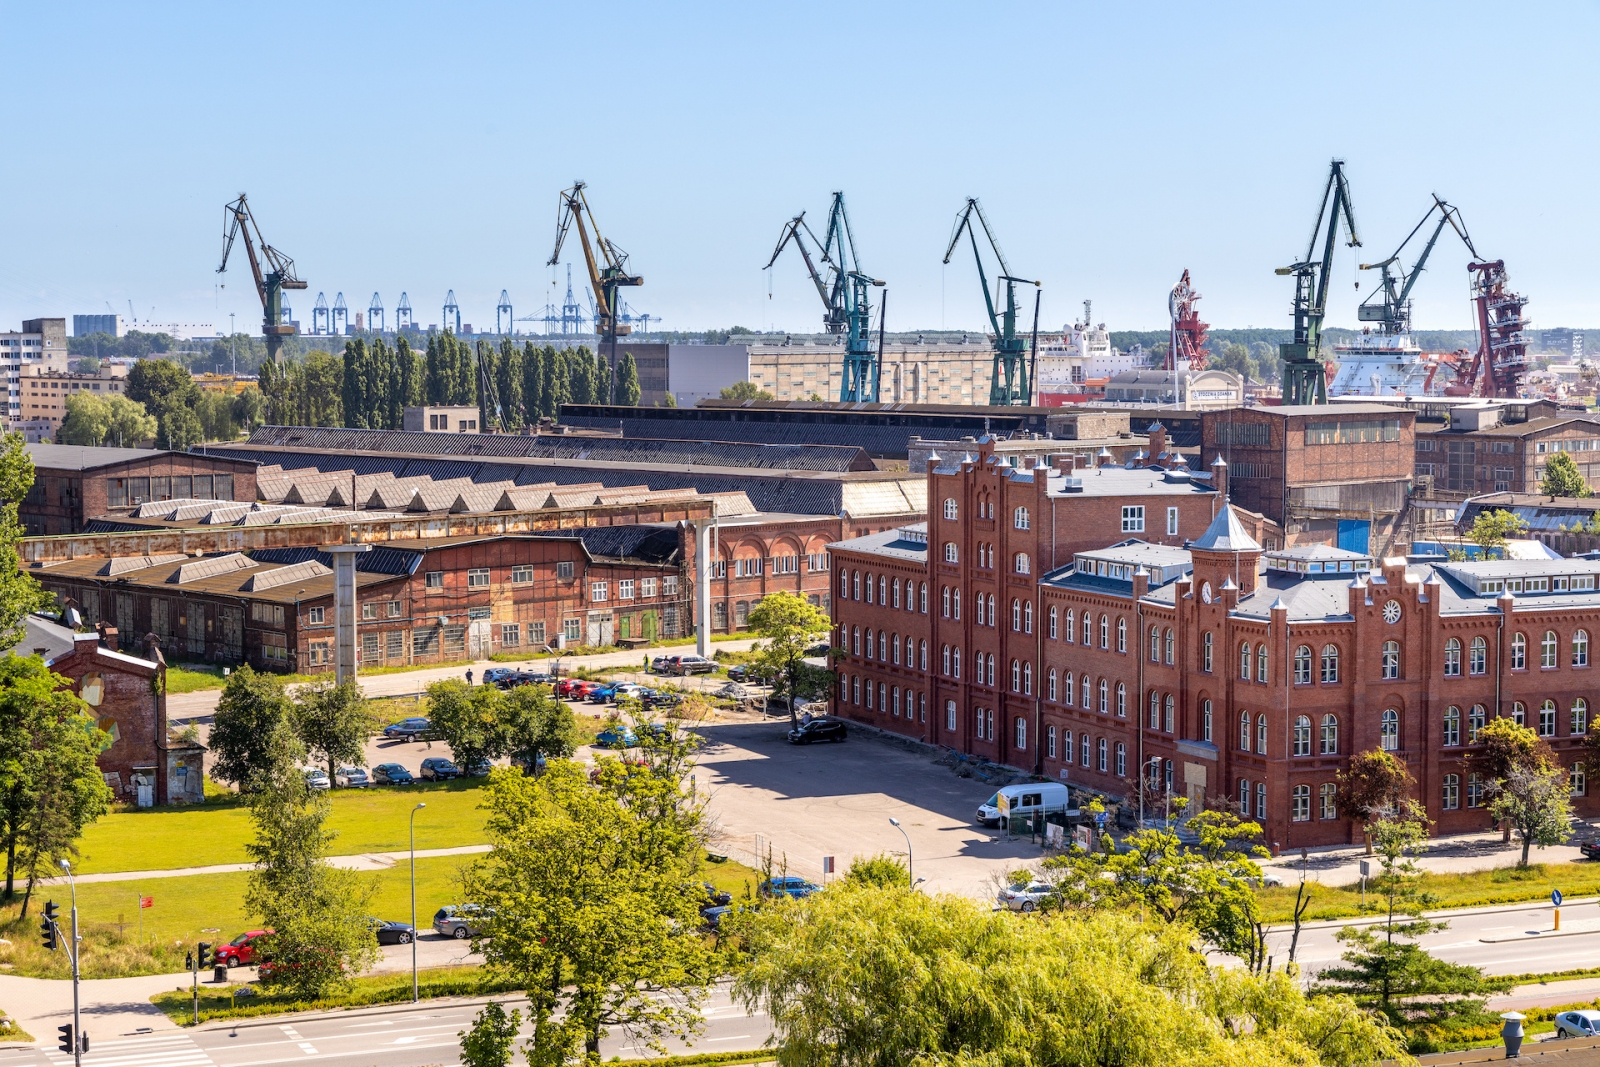 Vue panoramique de l'infrastructure industrielle du chantier naval de Gdansk près du bâtiment du Centre européen de solidarité sur la place Solidarnosci à Gdansk, en Pologne